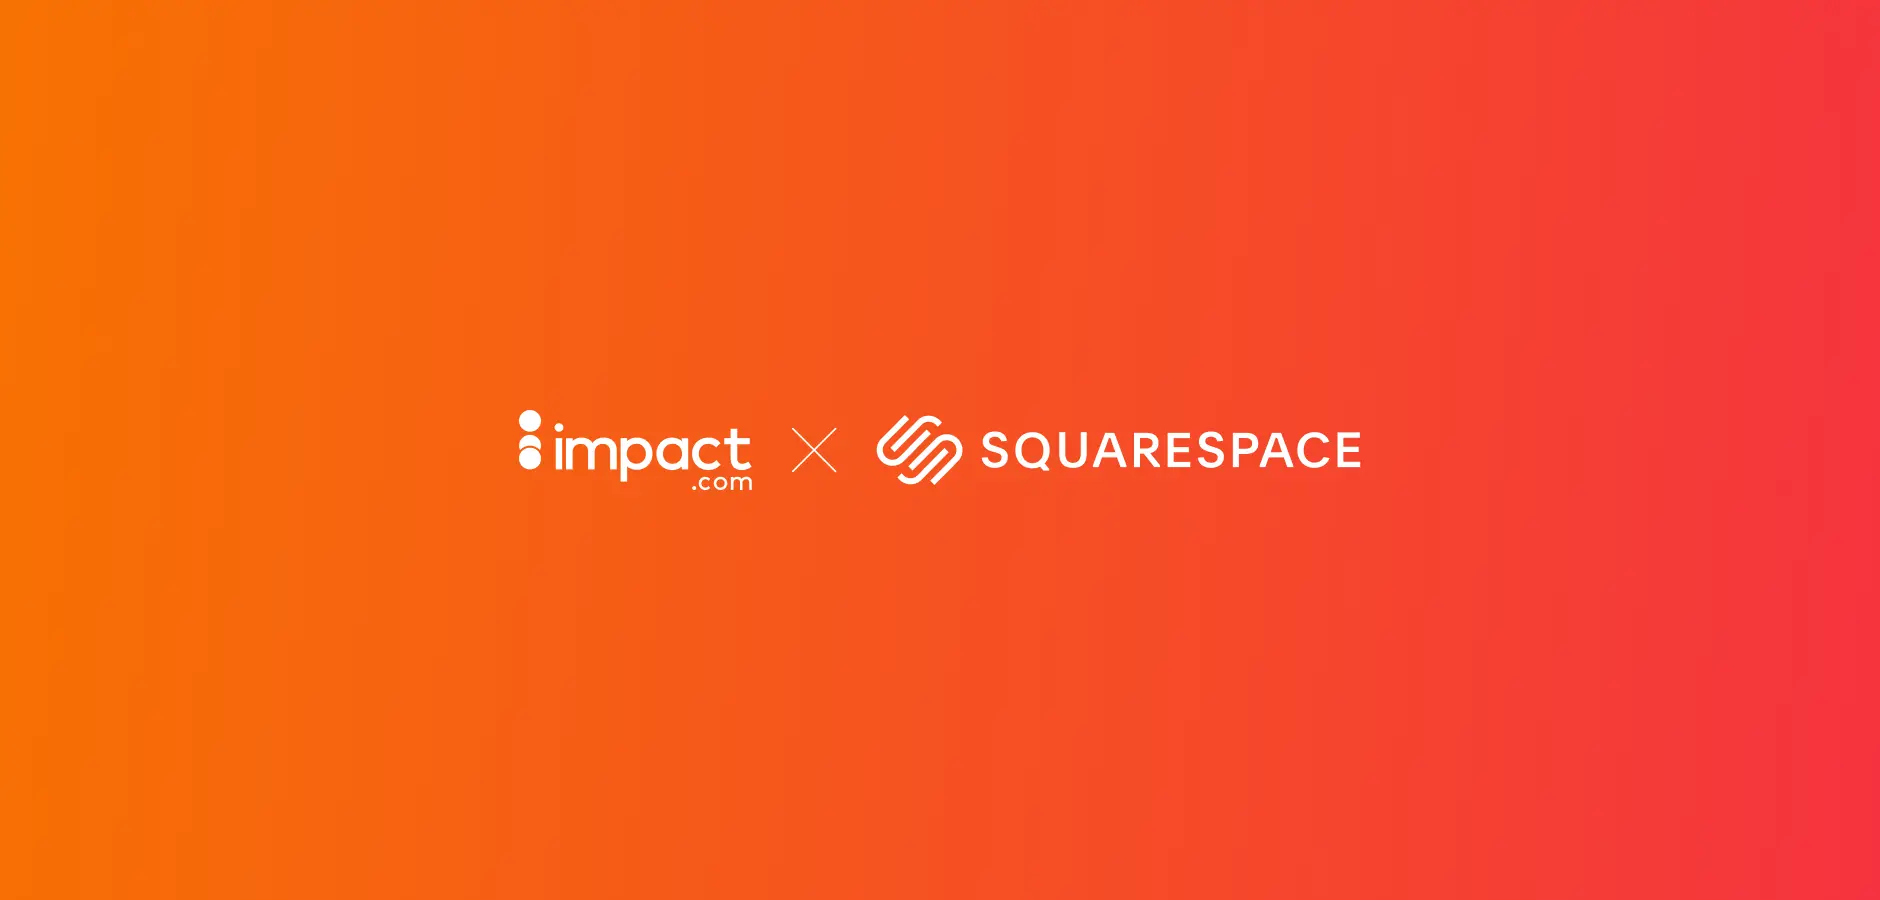 impact.com x squarespace